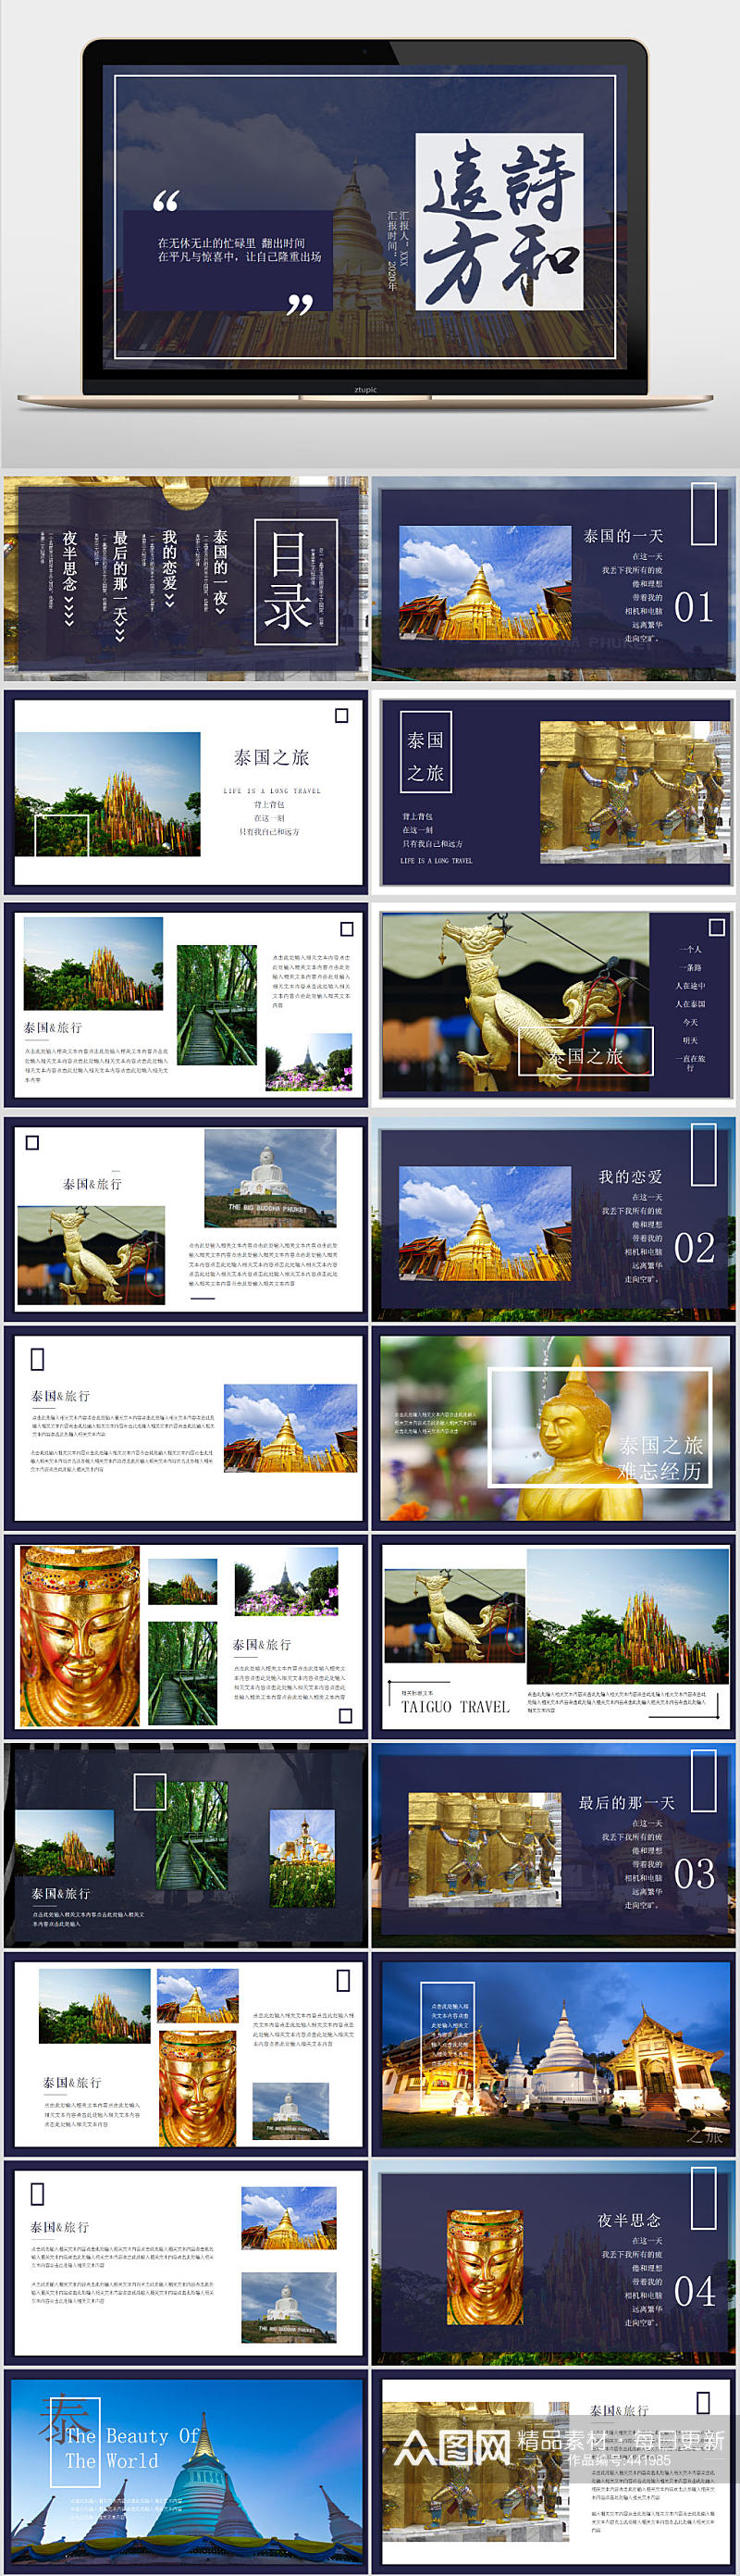 杂志风泰国旅行相册PPT素材